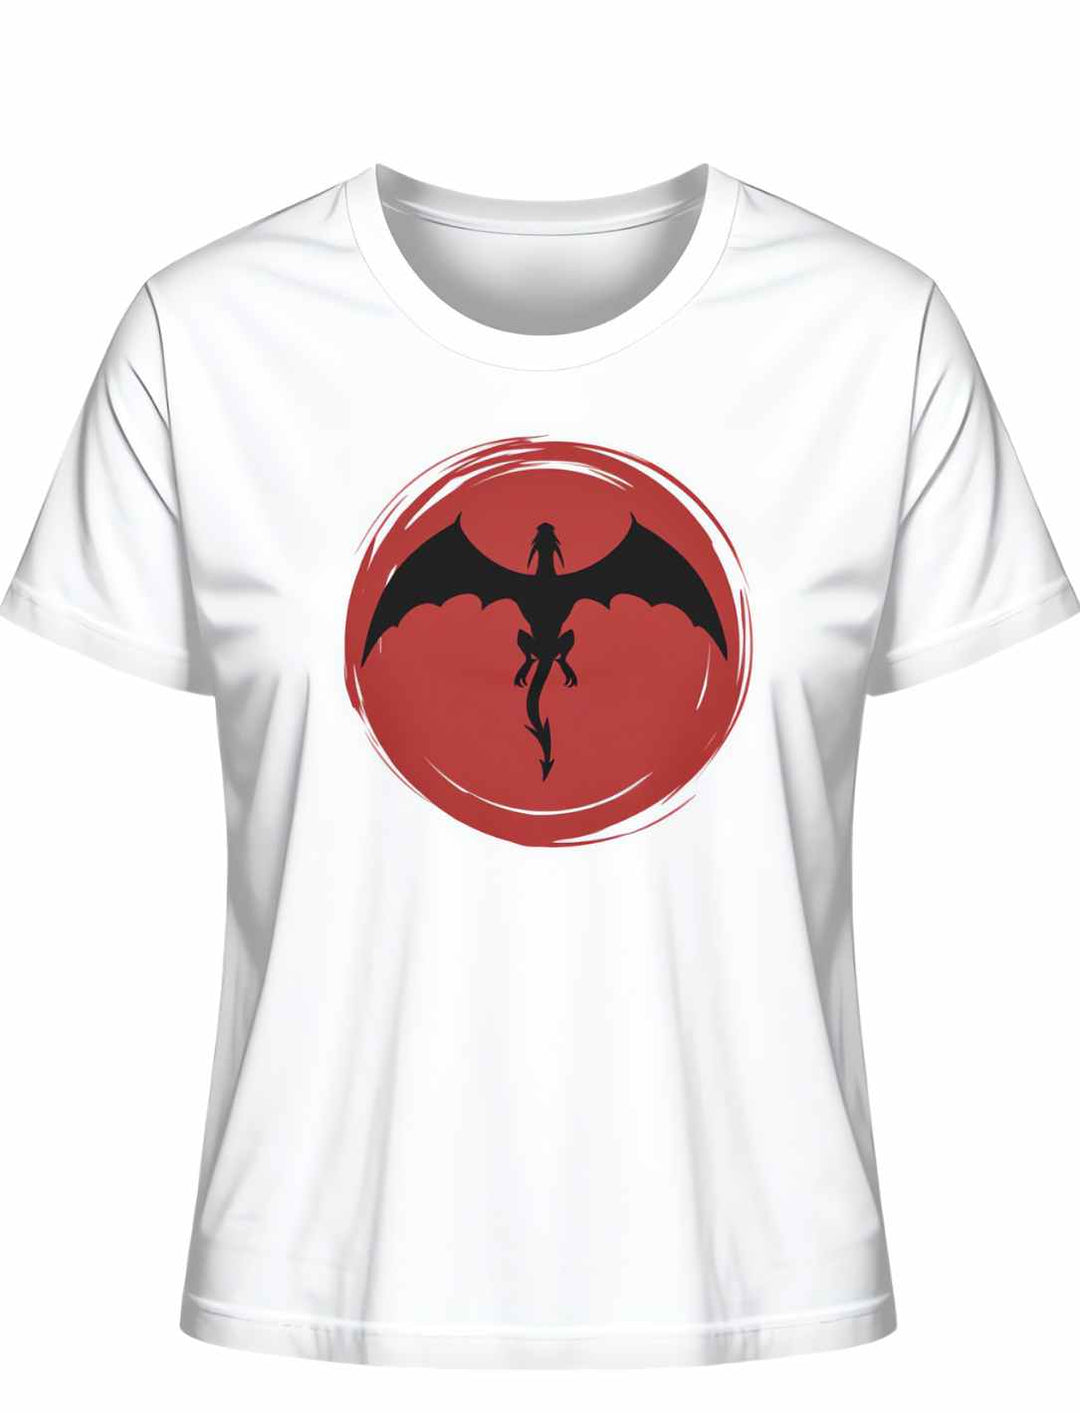 Weißes 'Saga of the Dragon' T-Shirt in Liegeansicht auf natürlichem Hintergrund, zeigt das kunstvolle Drachen-Design.